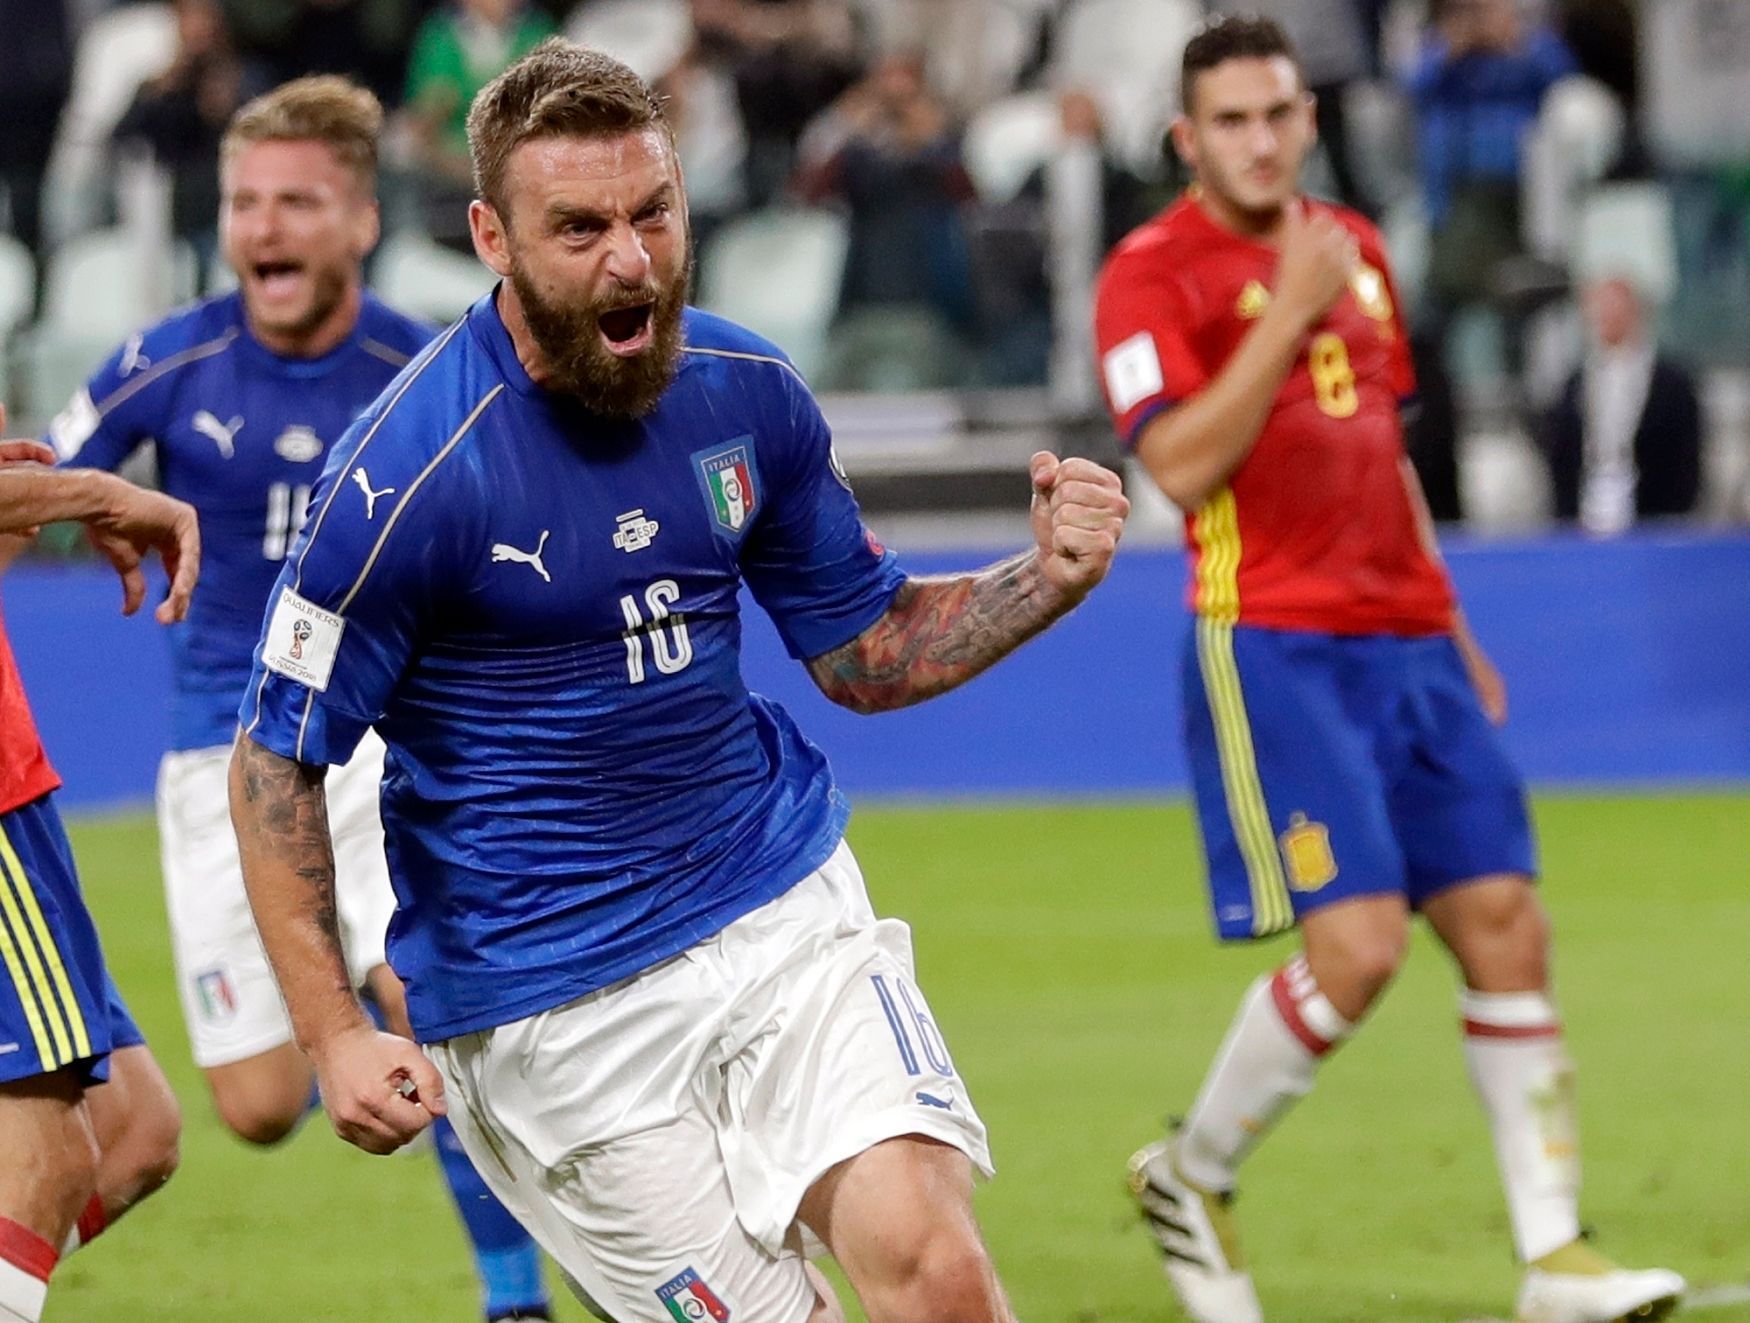 Soccer WCup 2018 Itálie - Španělsko, kvalifikace, Daniele De Rossi